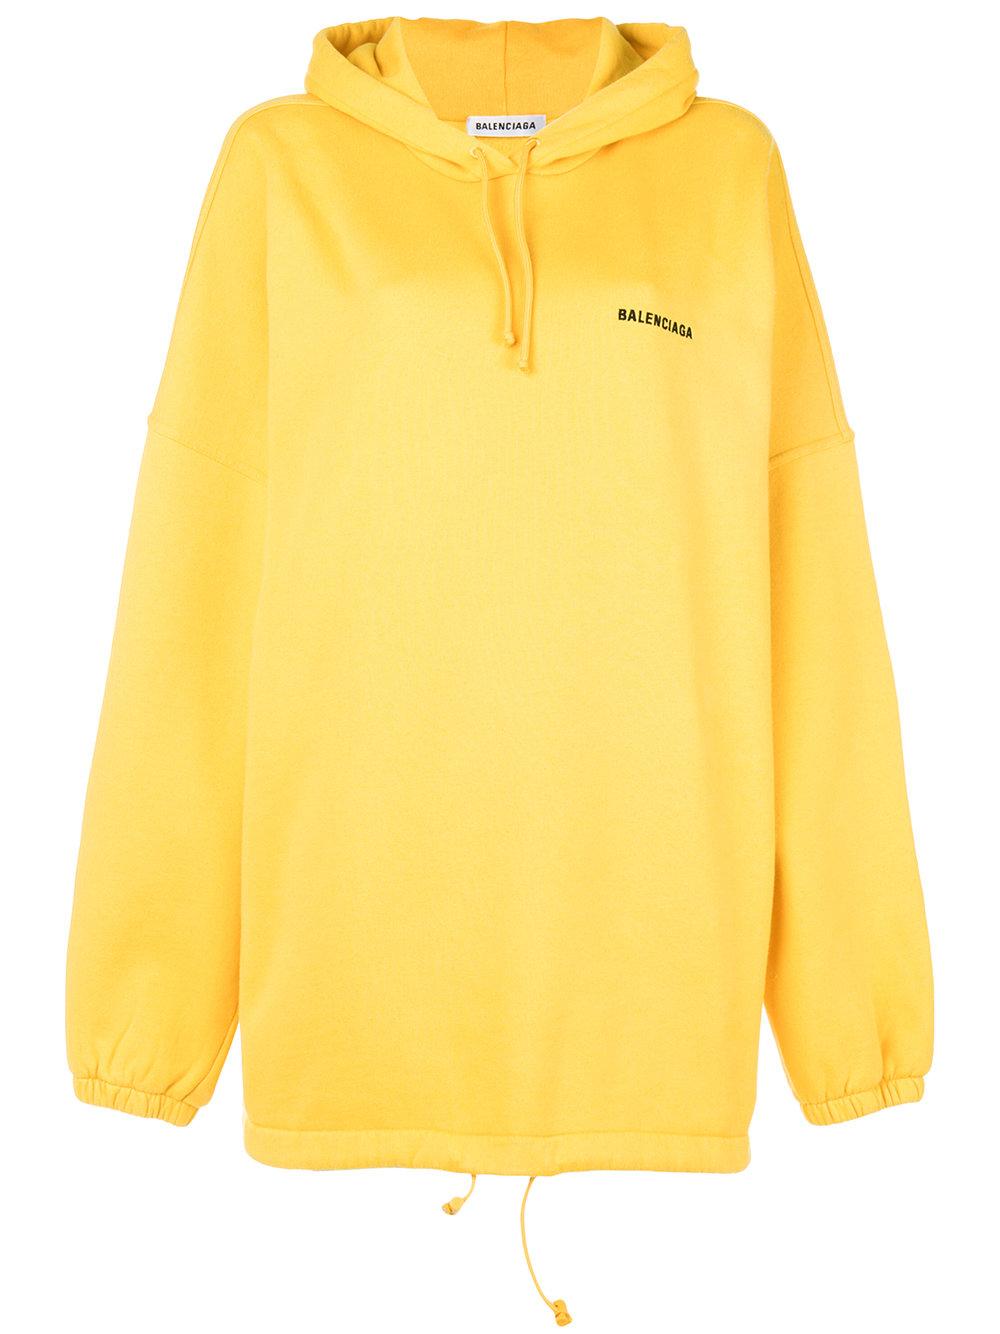 balenciaga yellow sweatshirt